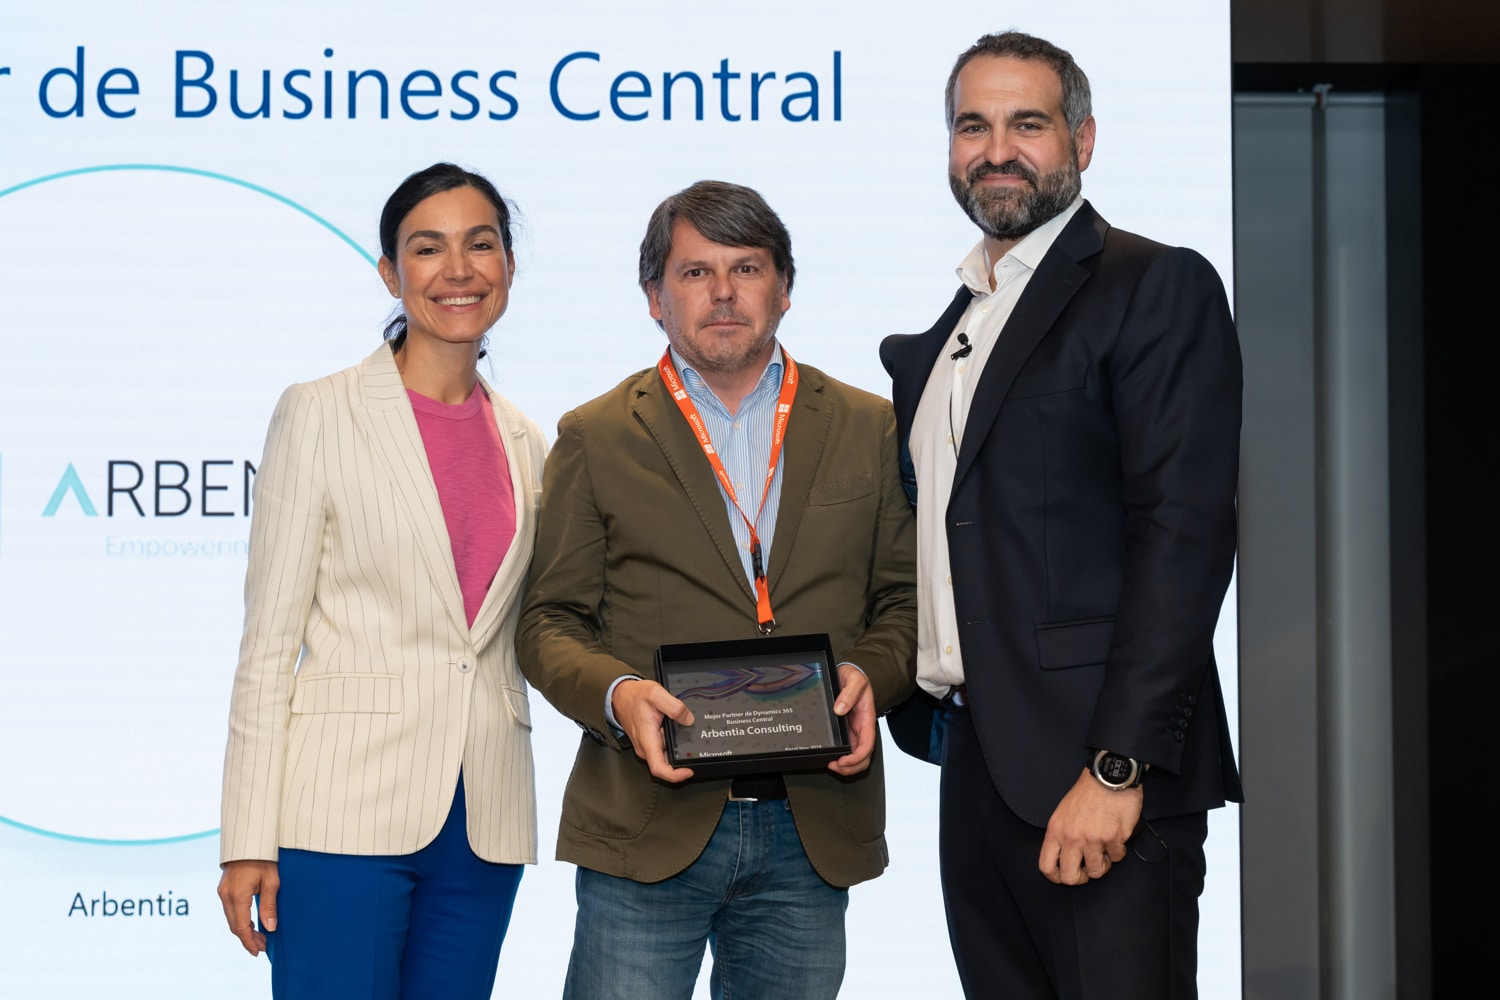 Daniel Taboada recogiendo el premio de ARBENTIA al mejor partner del año en Business Central